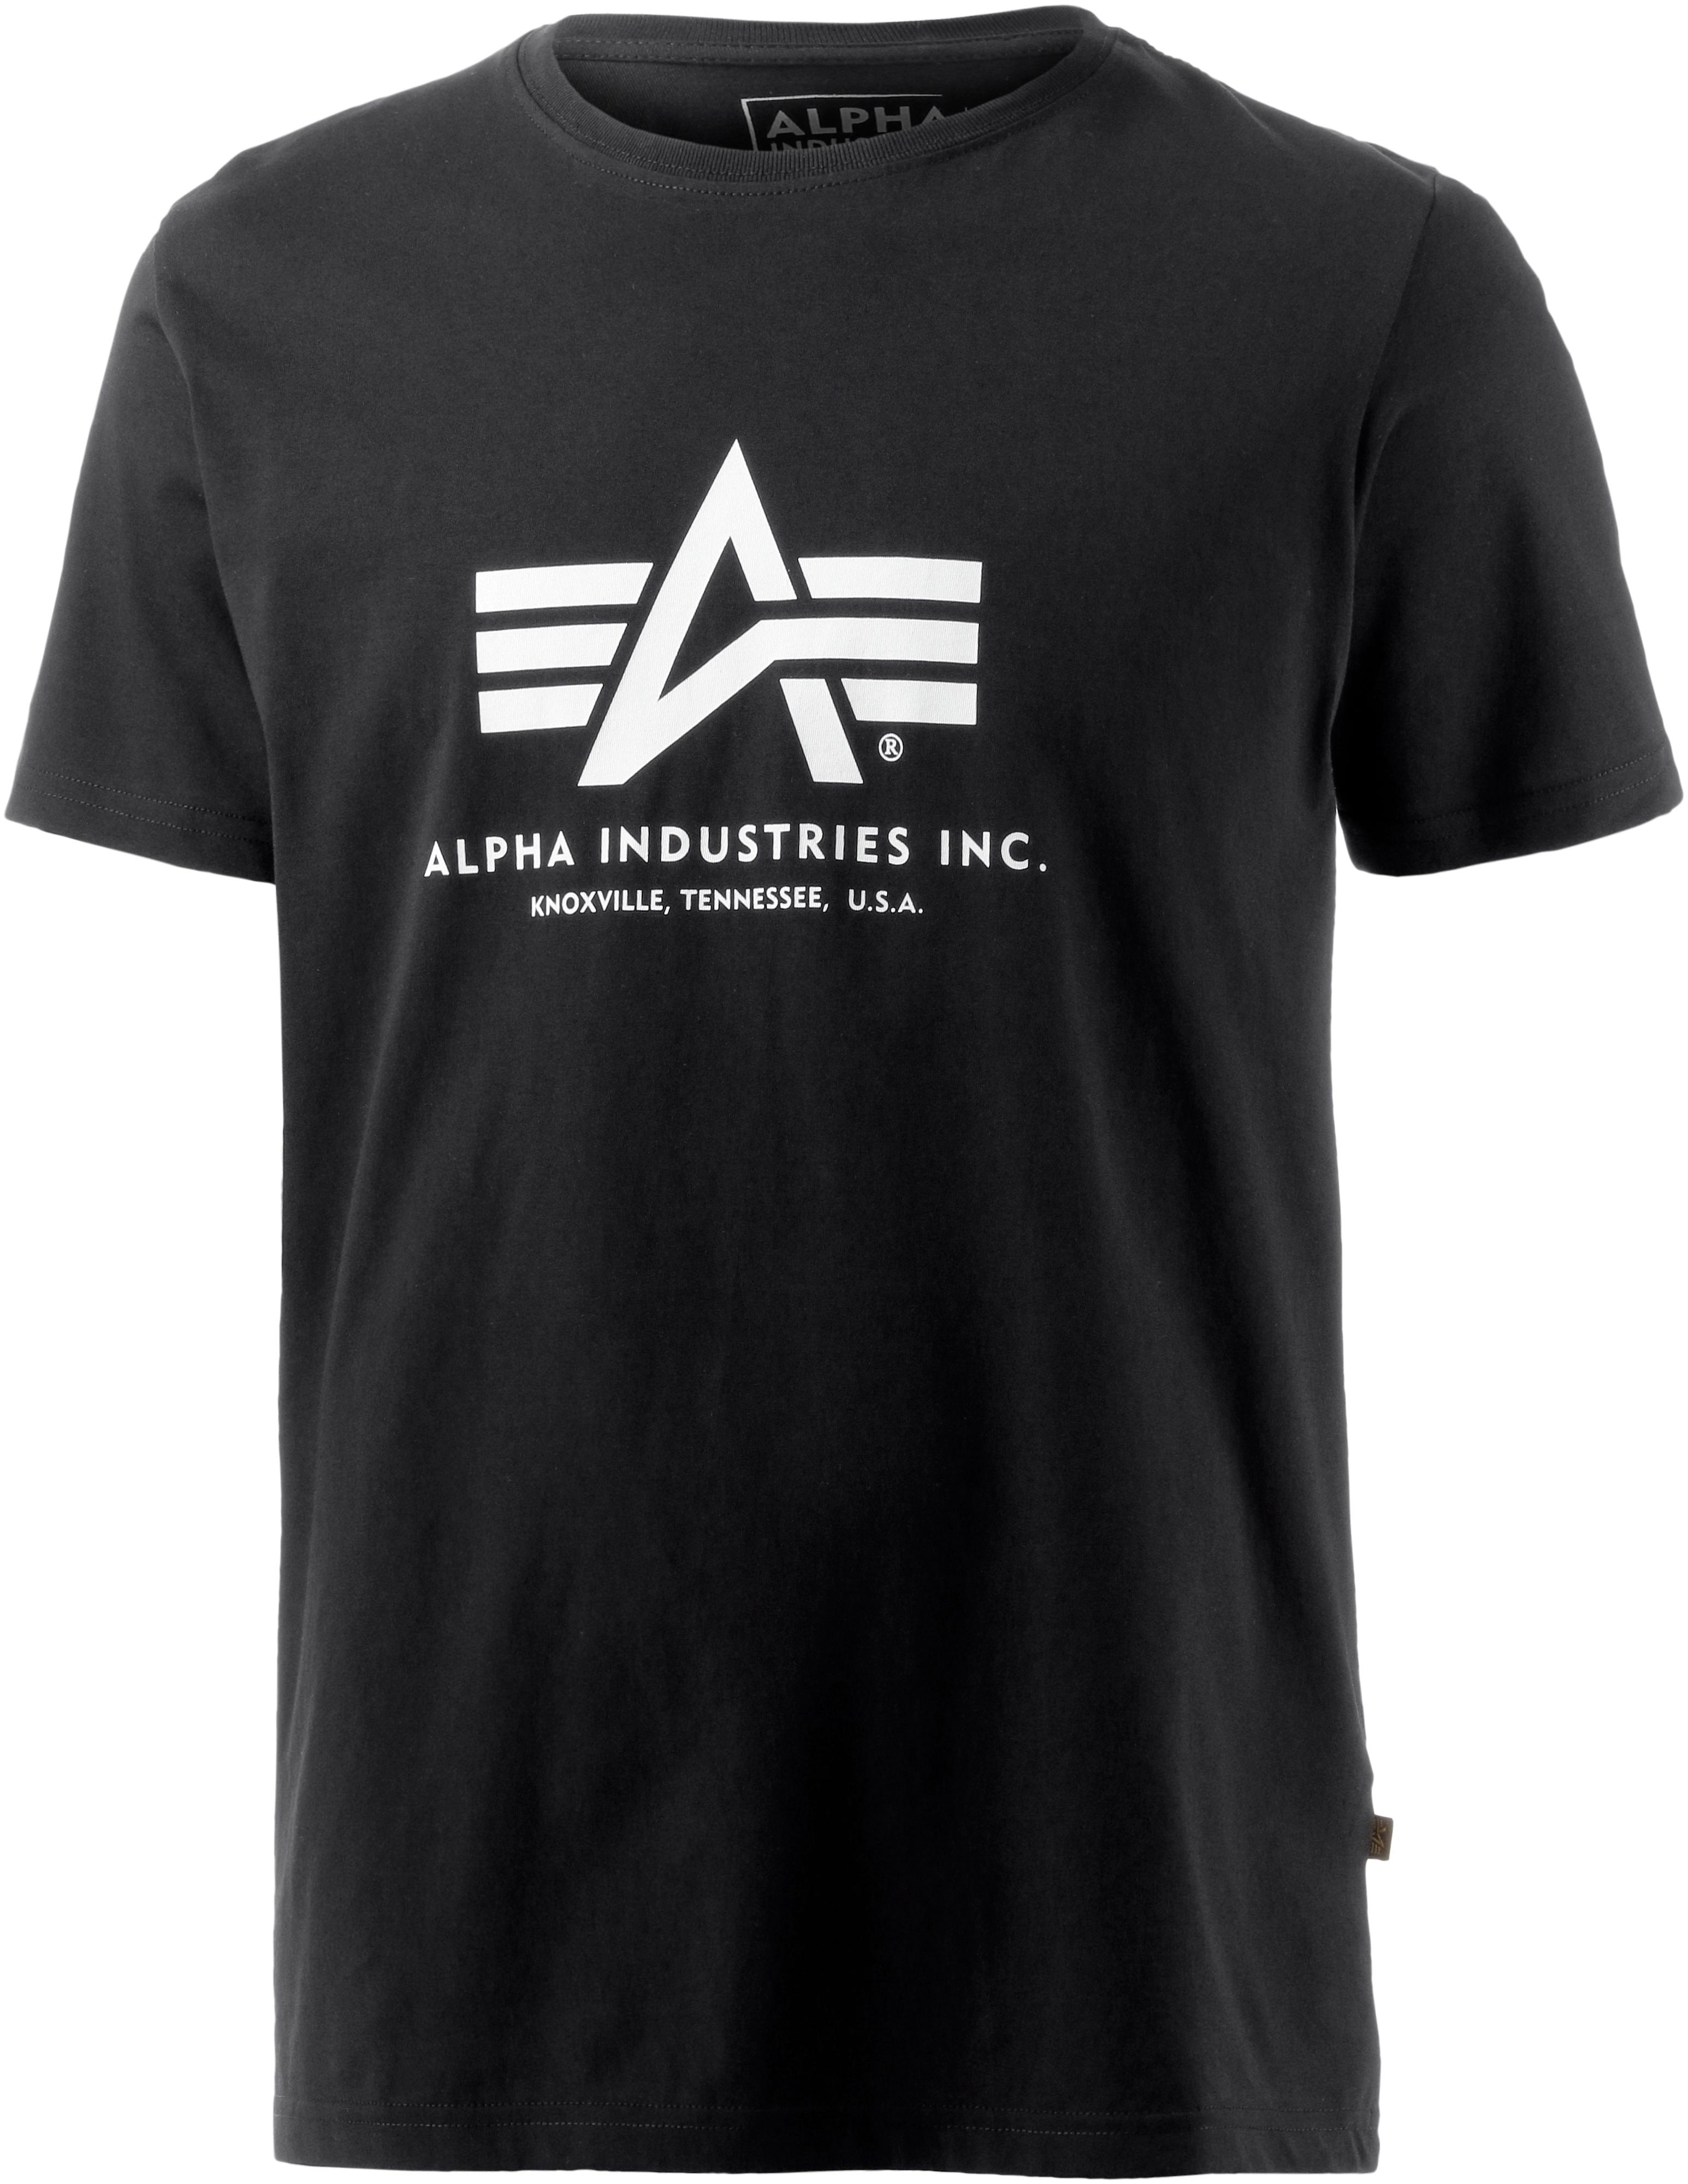 Alpha Industries T Shirt Herren Schwarz Im Online Shop Von Sportscheck Kaufen